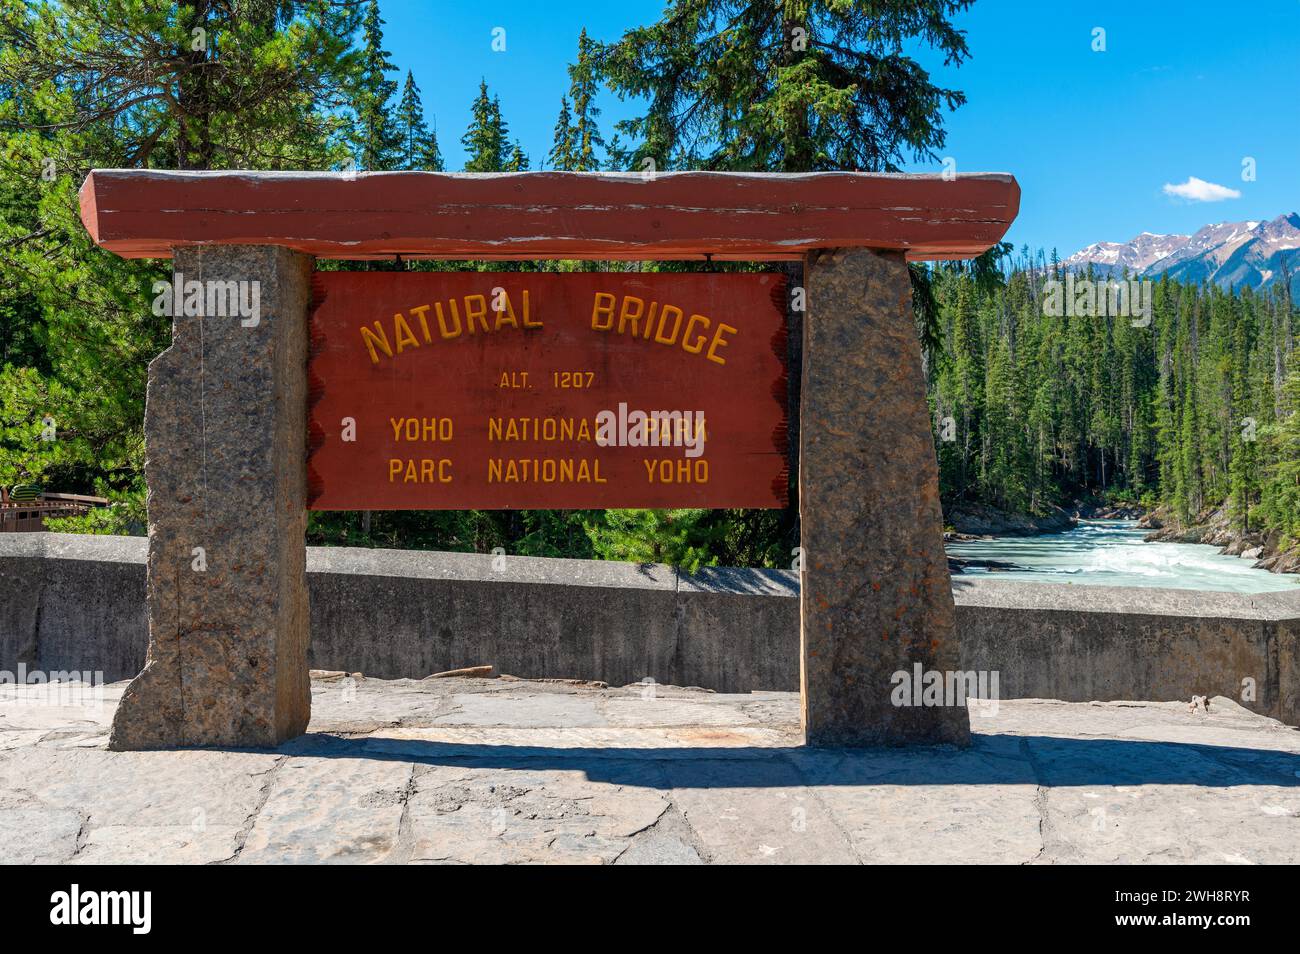 Panneau de formation rocheuse Natural Bridge près de la rivière Kicking Horse, parc national Yoho, Colombie-Britannique, Canada. Banque D'Images